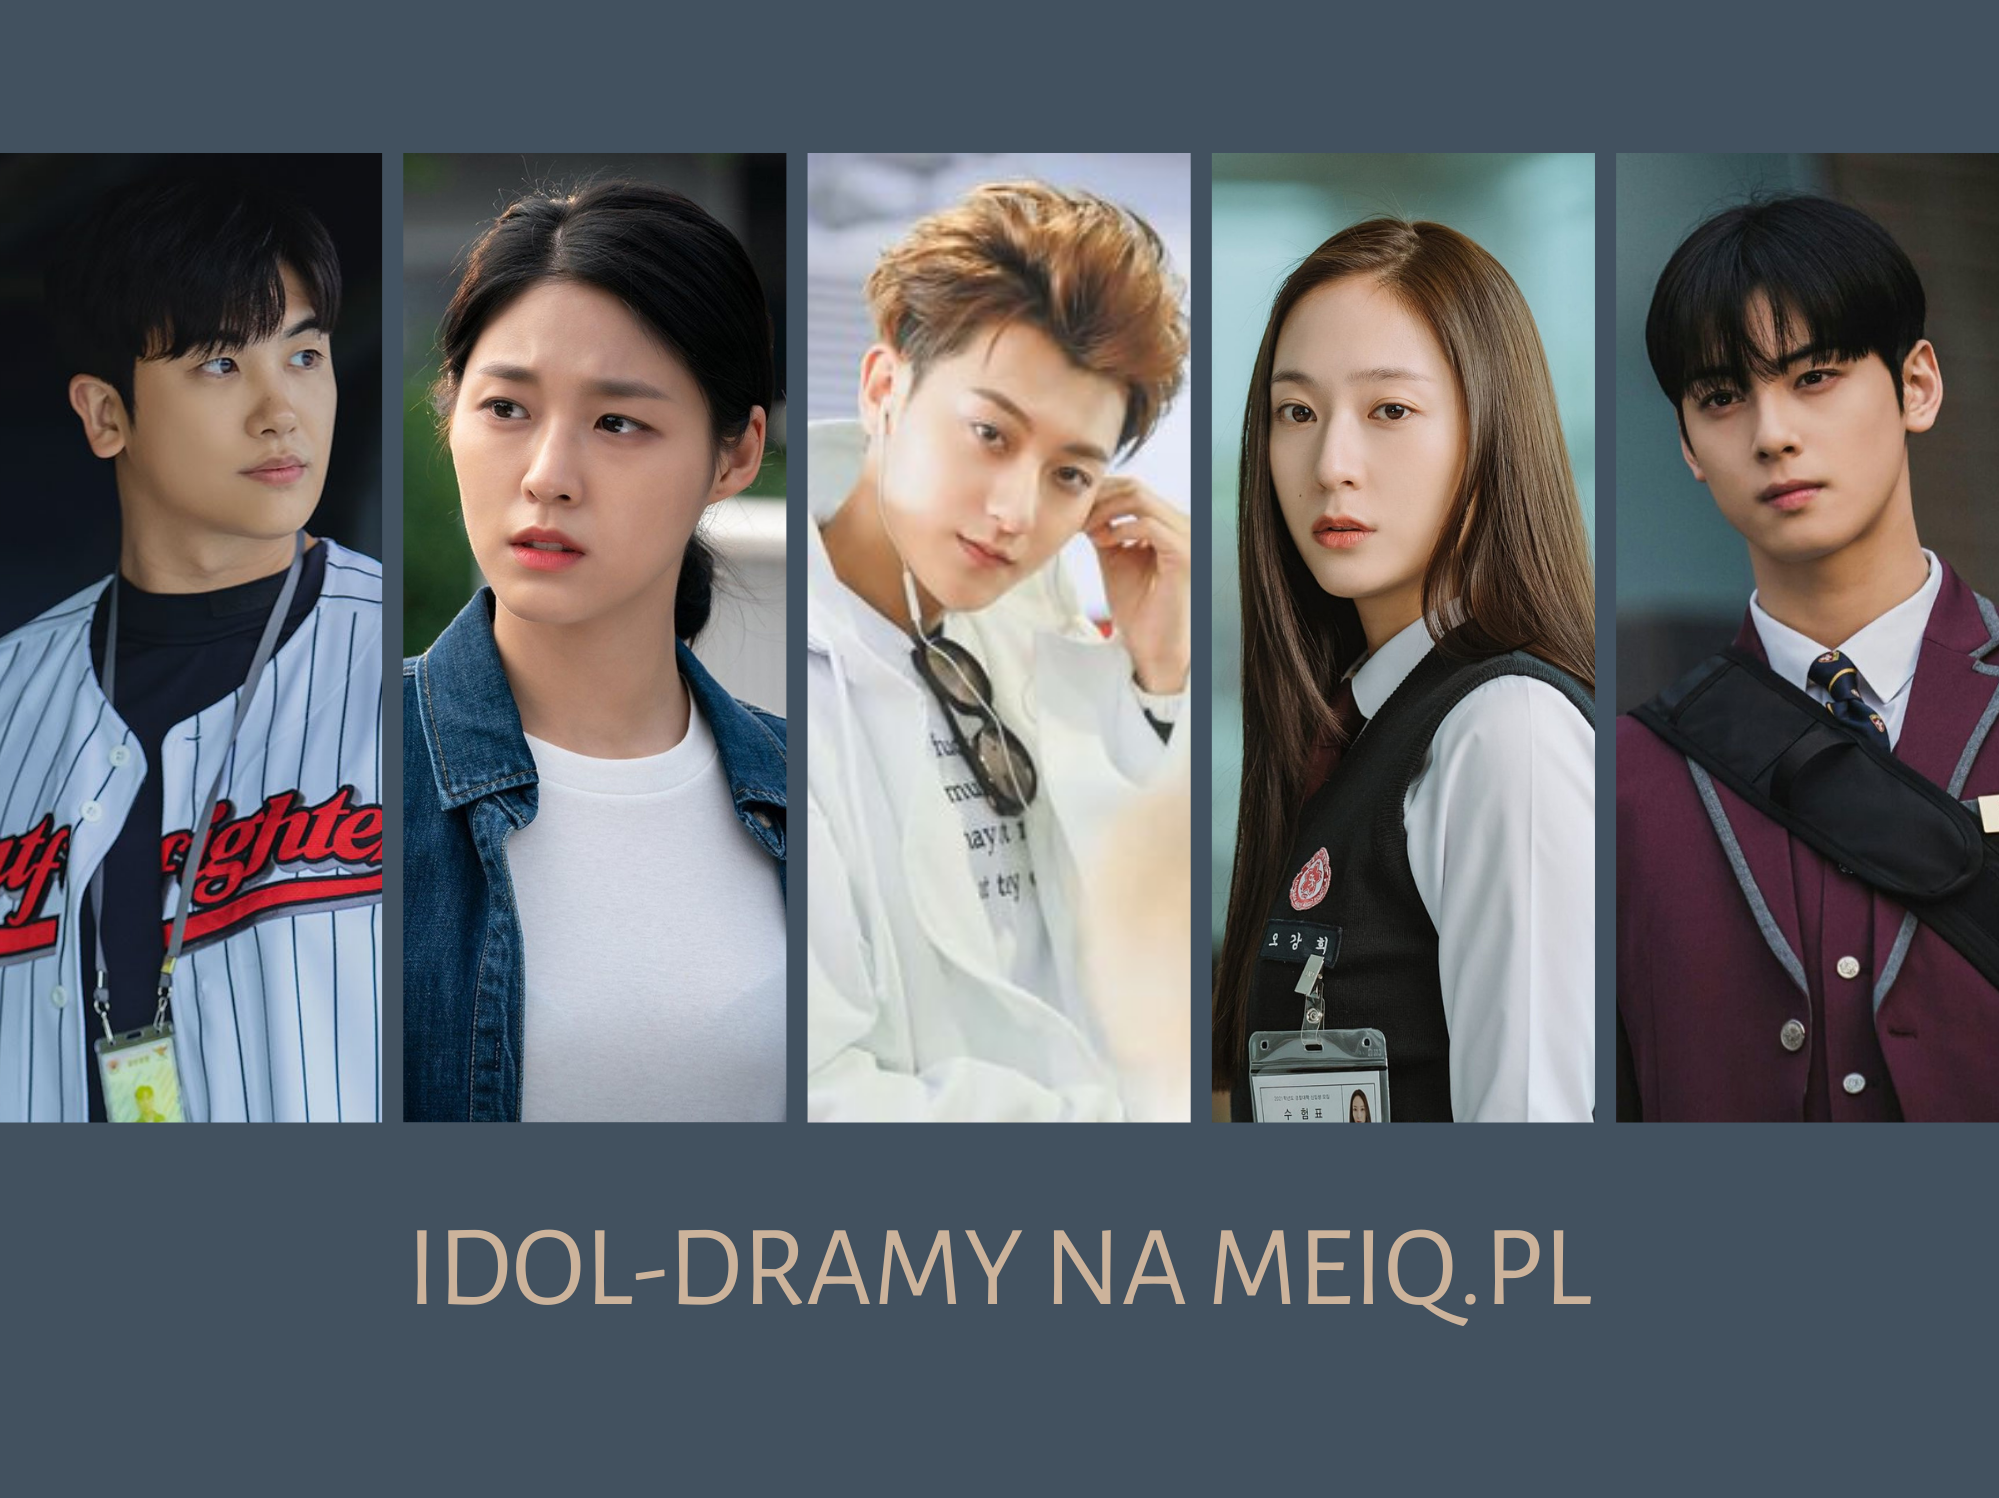 Idol-dramy – czy idol może być dobrym aktorem?